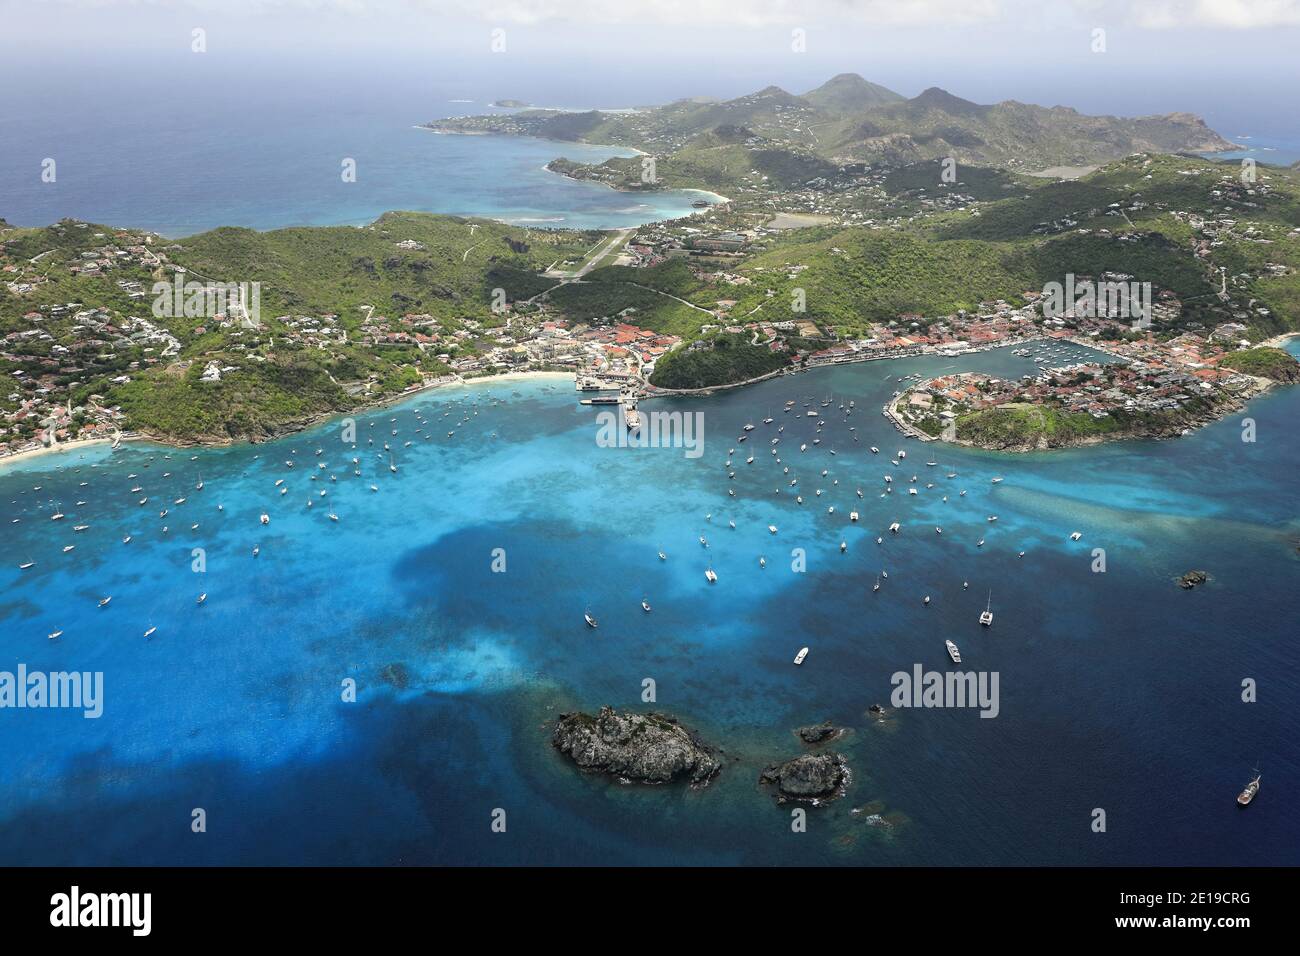 Caraibi, Isola di Saint Barthelemy (St. Barths o San Barts): Gustavia, porto principale dell'isola. Riproduzione in riviste nautiche, guida nautica Foto Stock